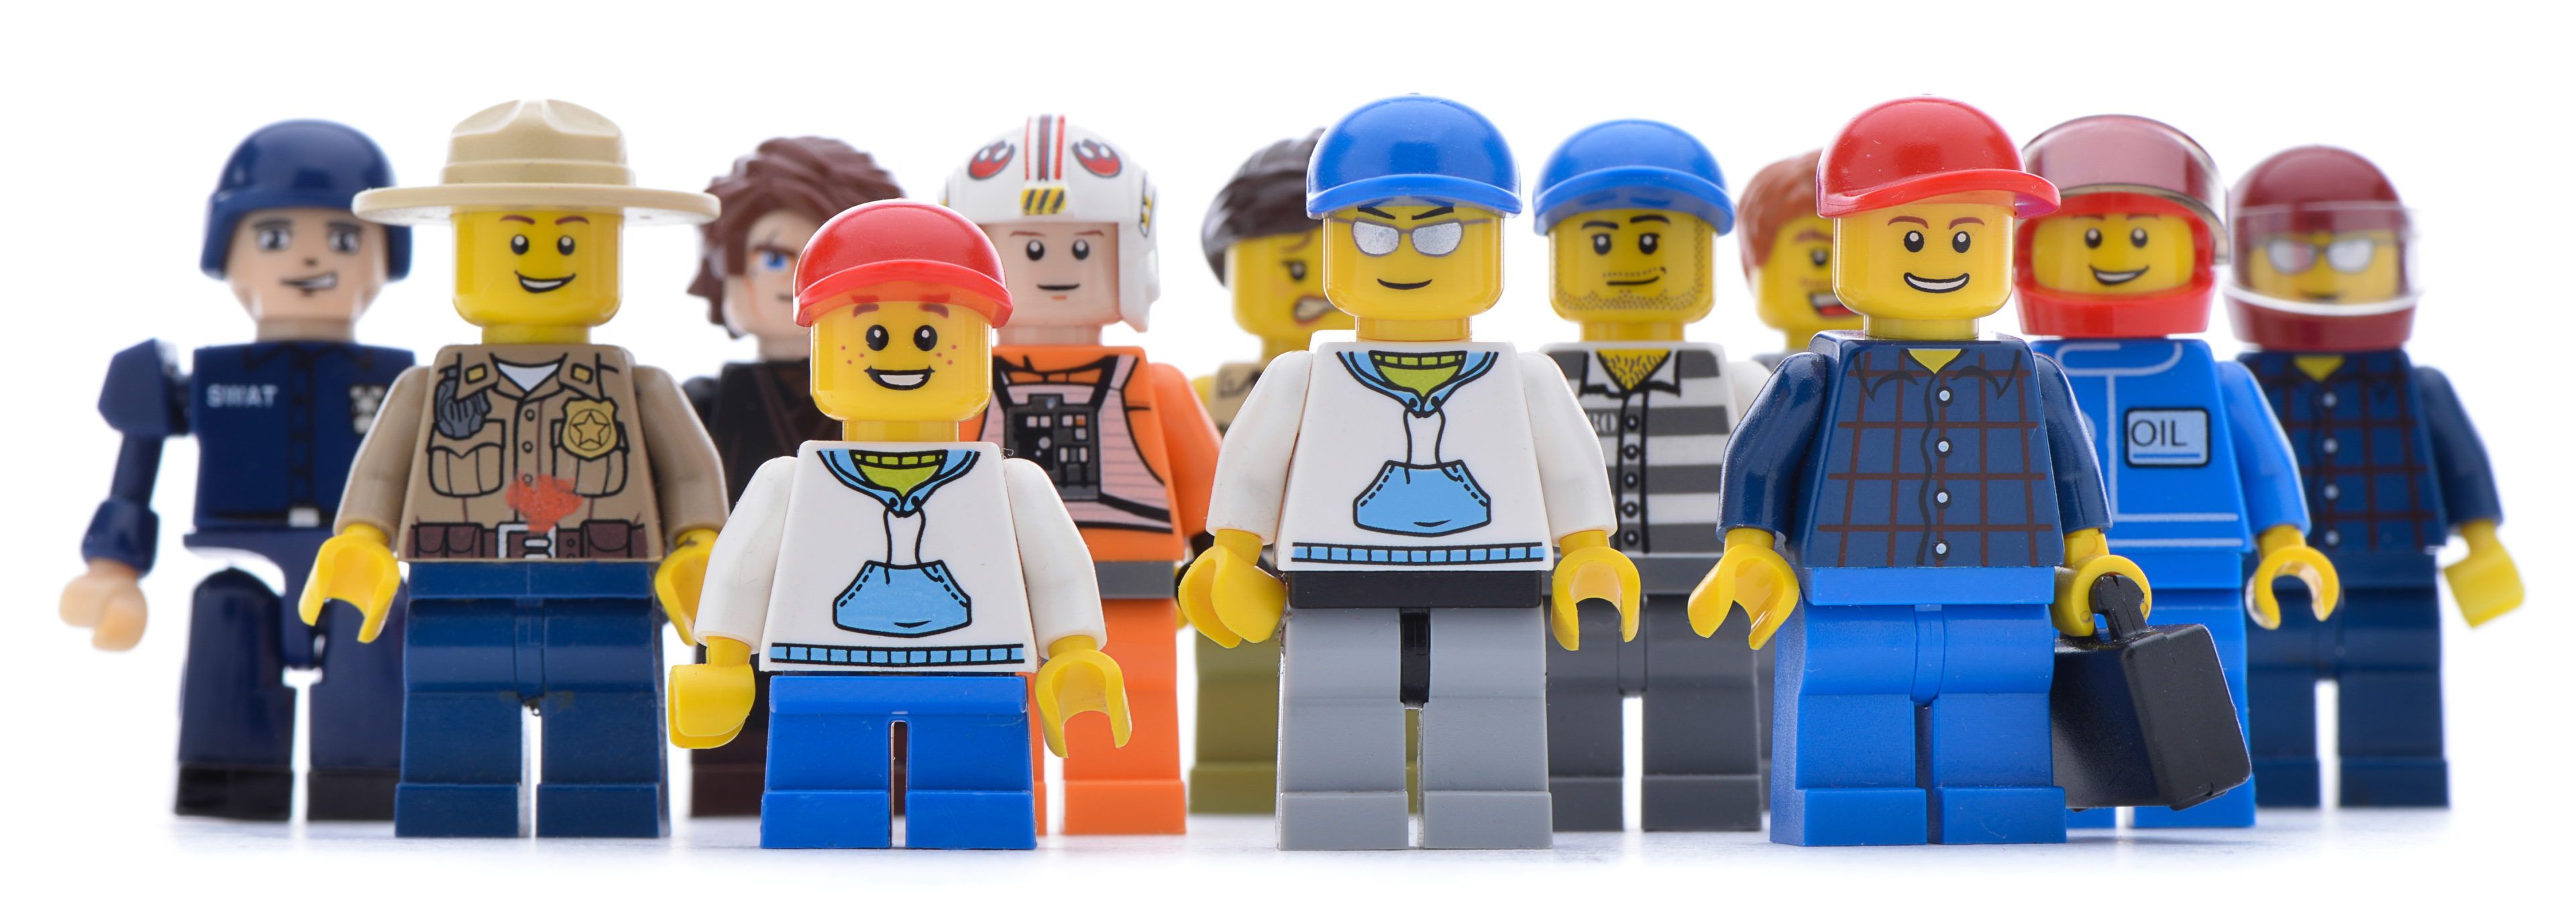 LEGO-Männchen in verschiedenen Berufen